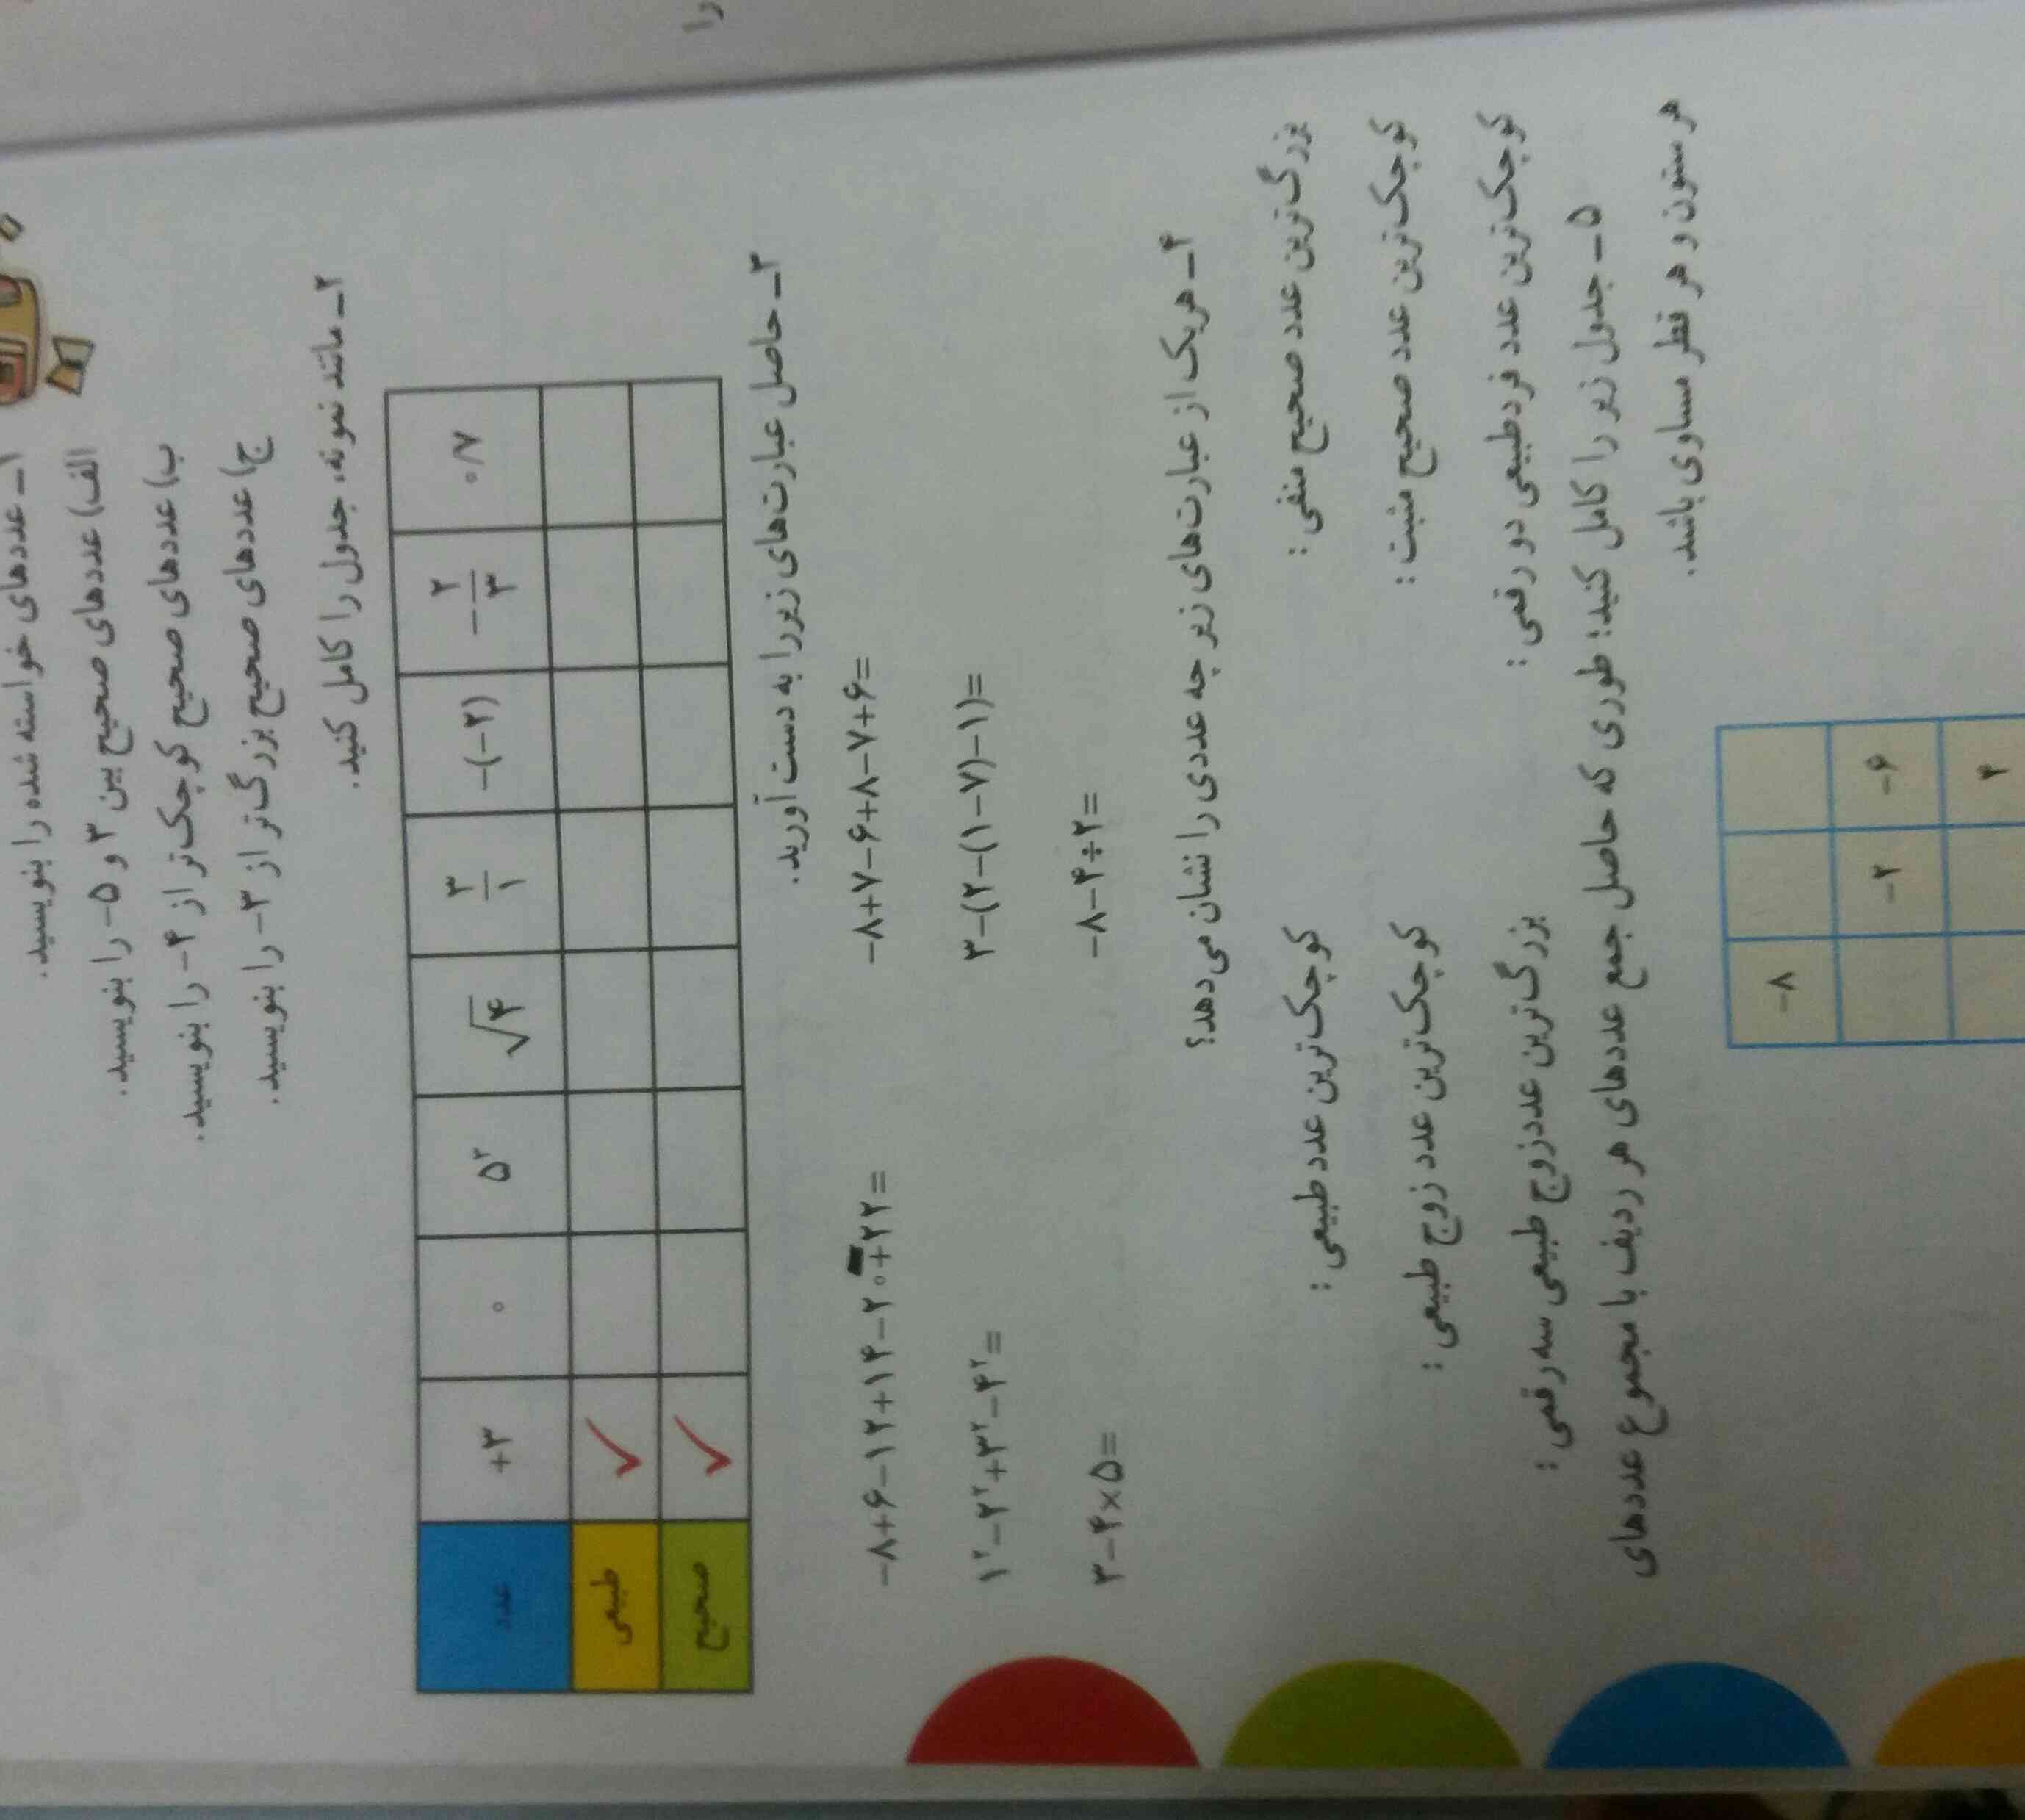 جواب صفحه 5 ریاضی.